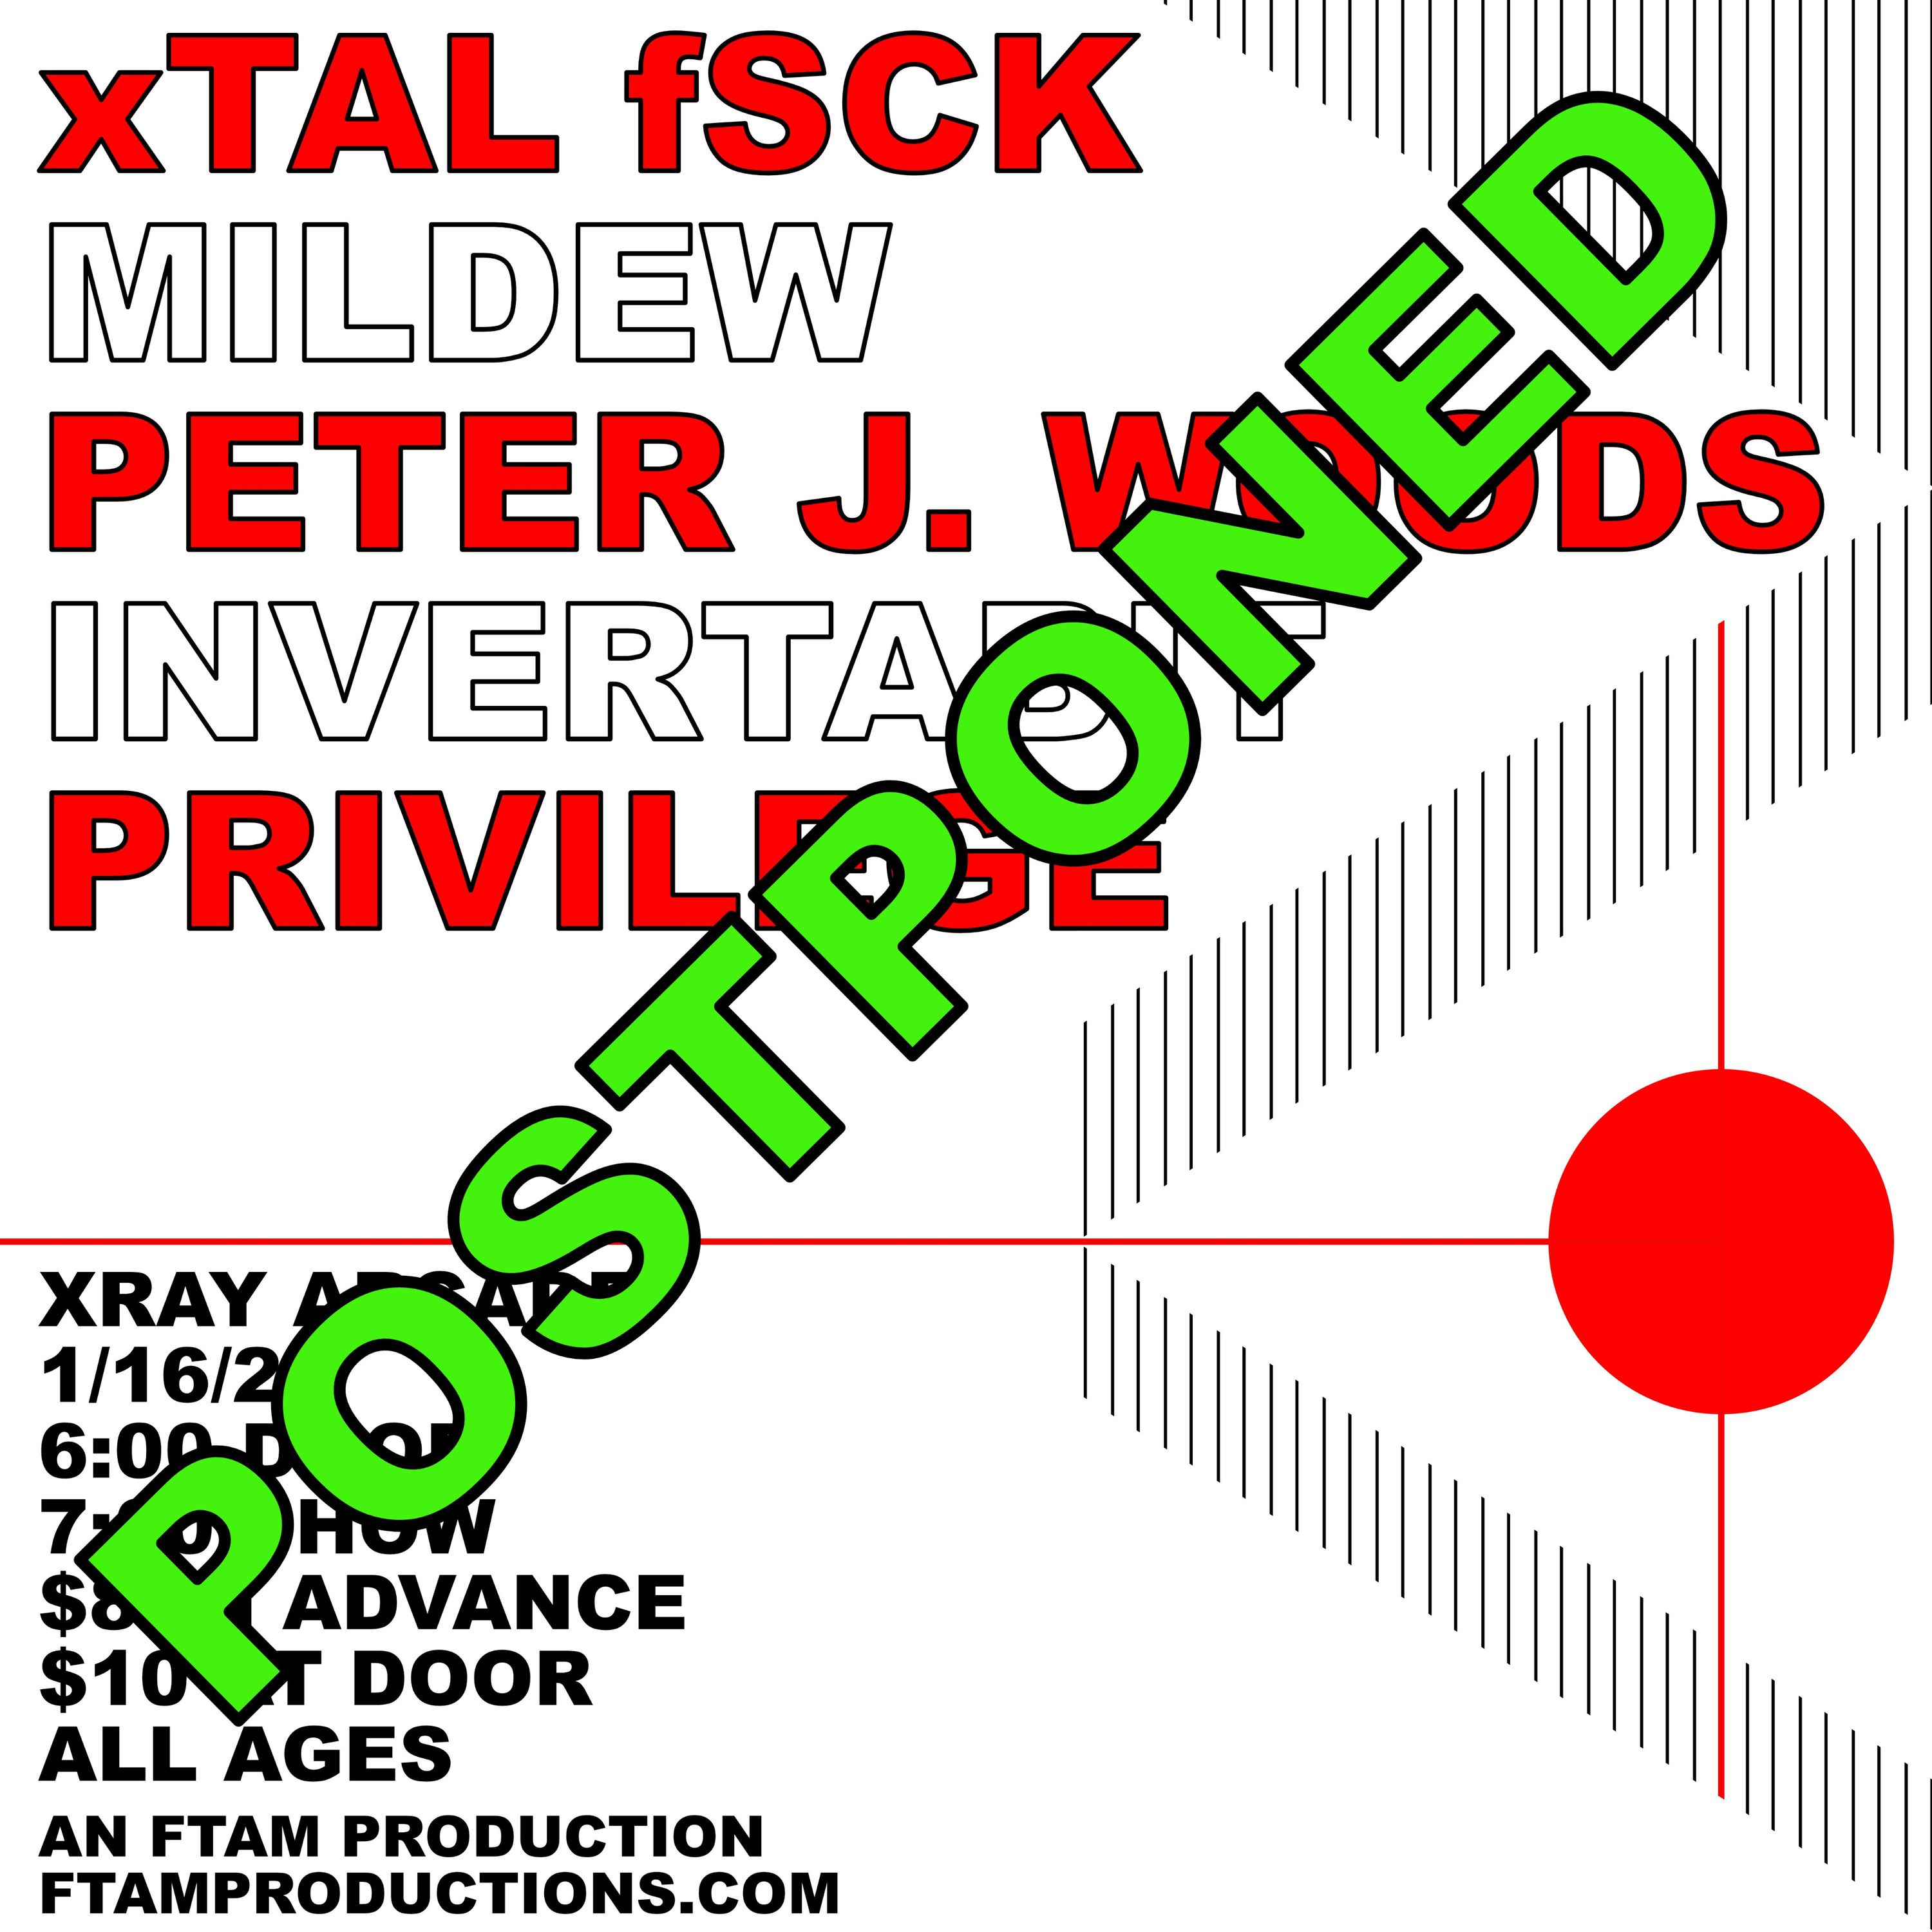 xTAL postponed